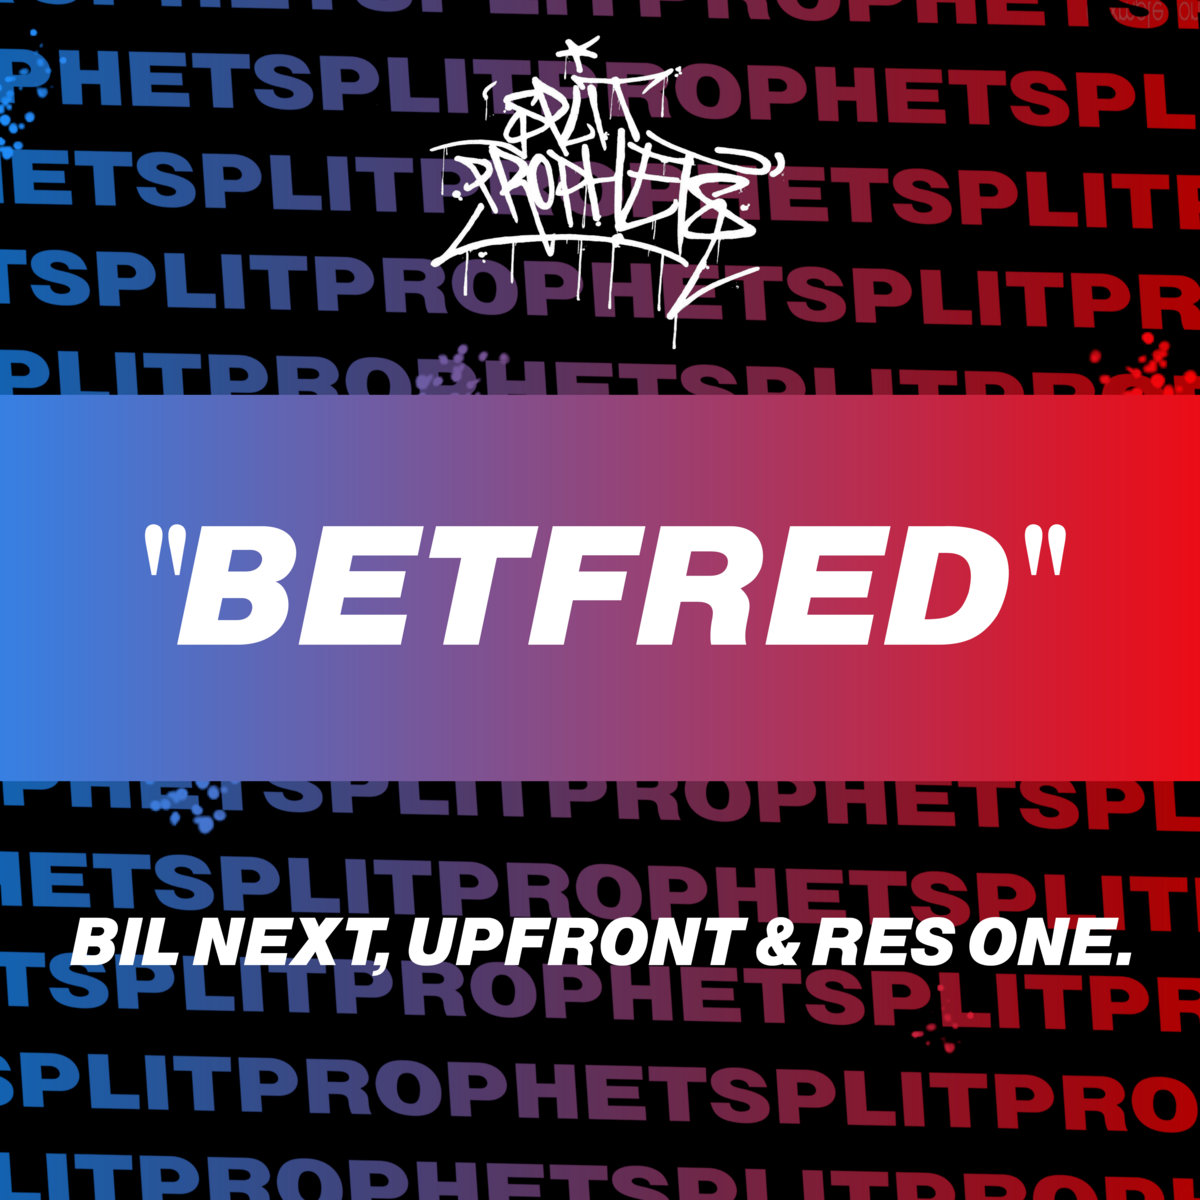 Betfred_split_prophets